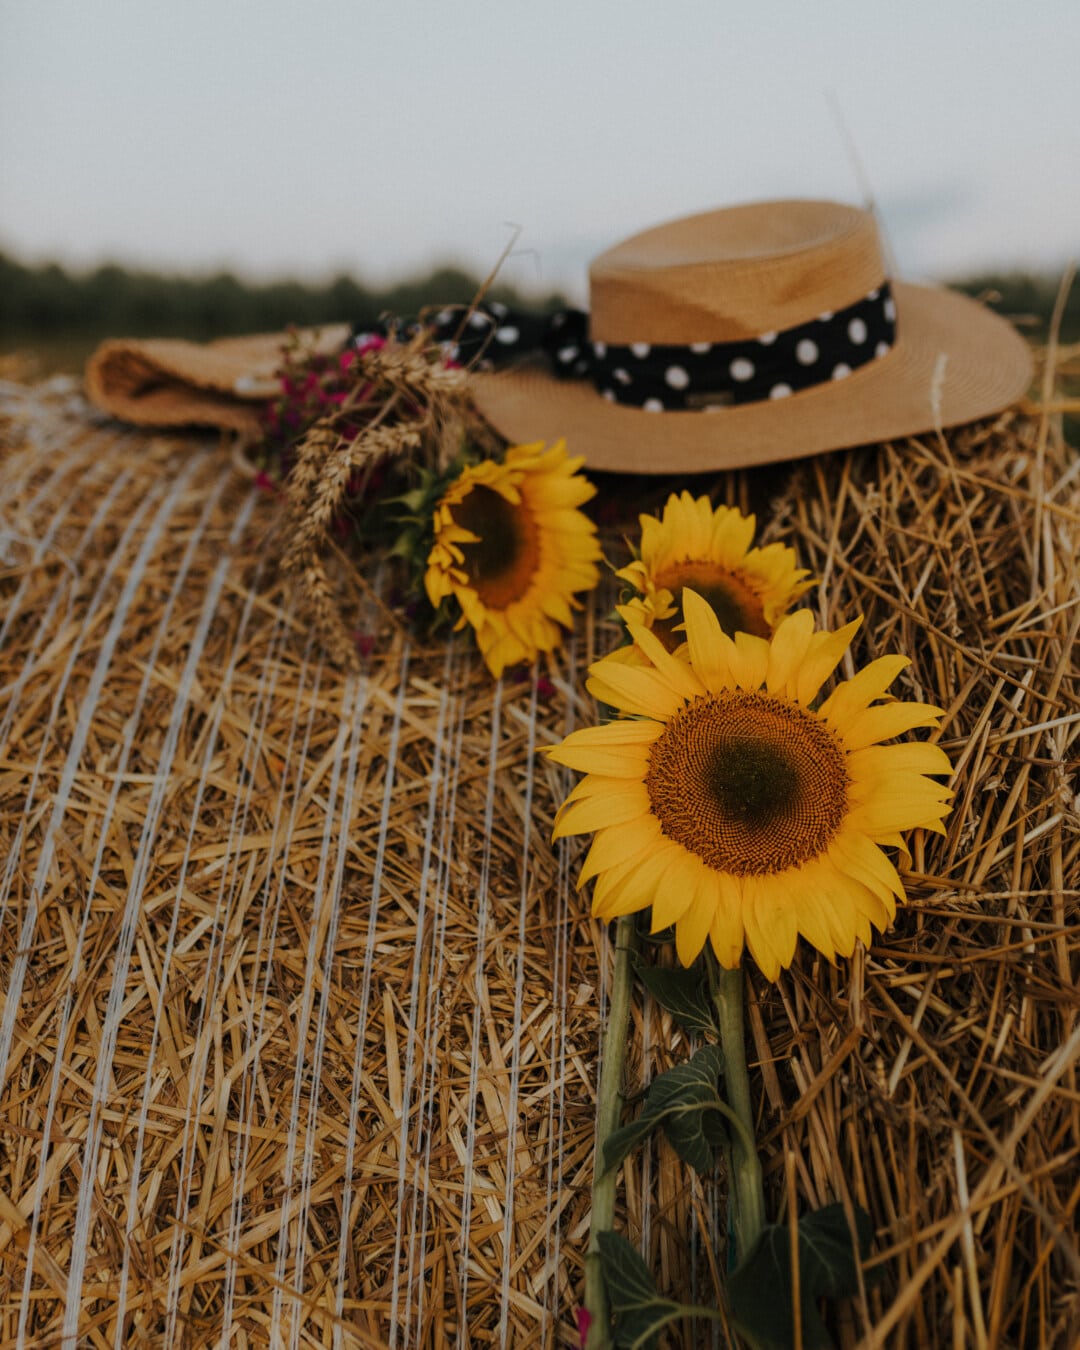 haystack, sunflower, hat, still life, nature, flower, straw, summer, rural, fair weather